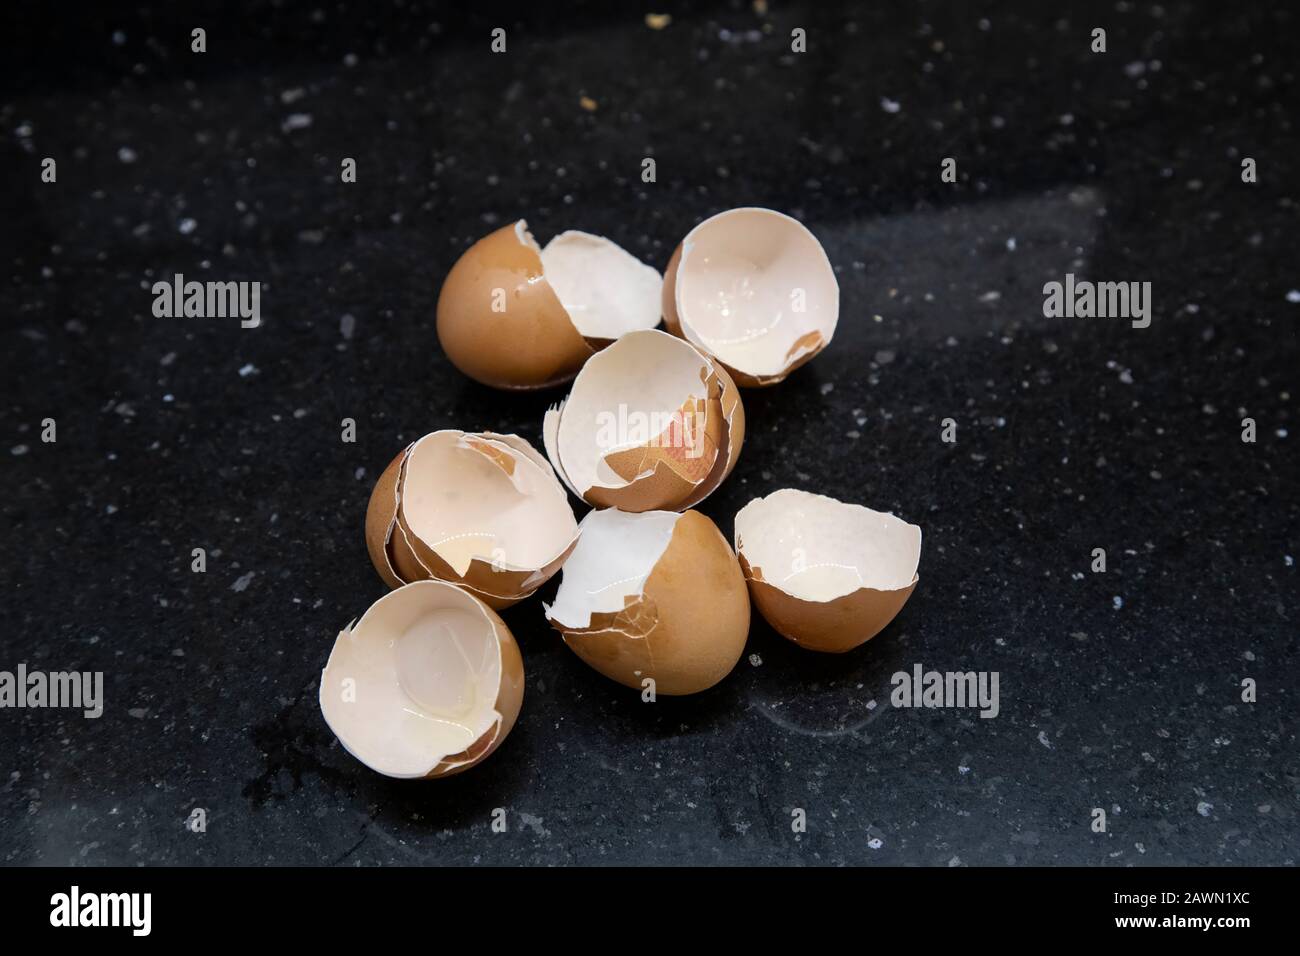 Auberginen aus sechs Eiern auf einer Küchenoberfläche, nachdem sie für die Zubereitung und das Kochen von Speisen verwendet wurden Stockfoto